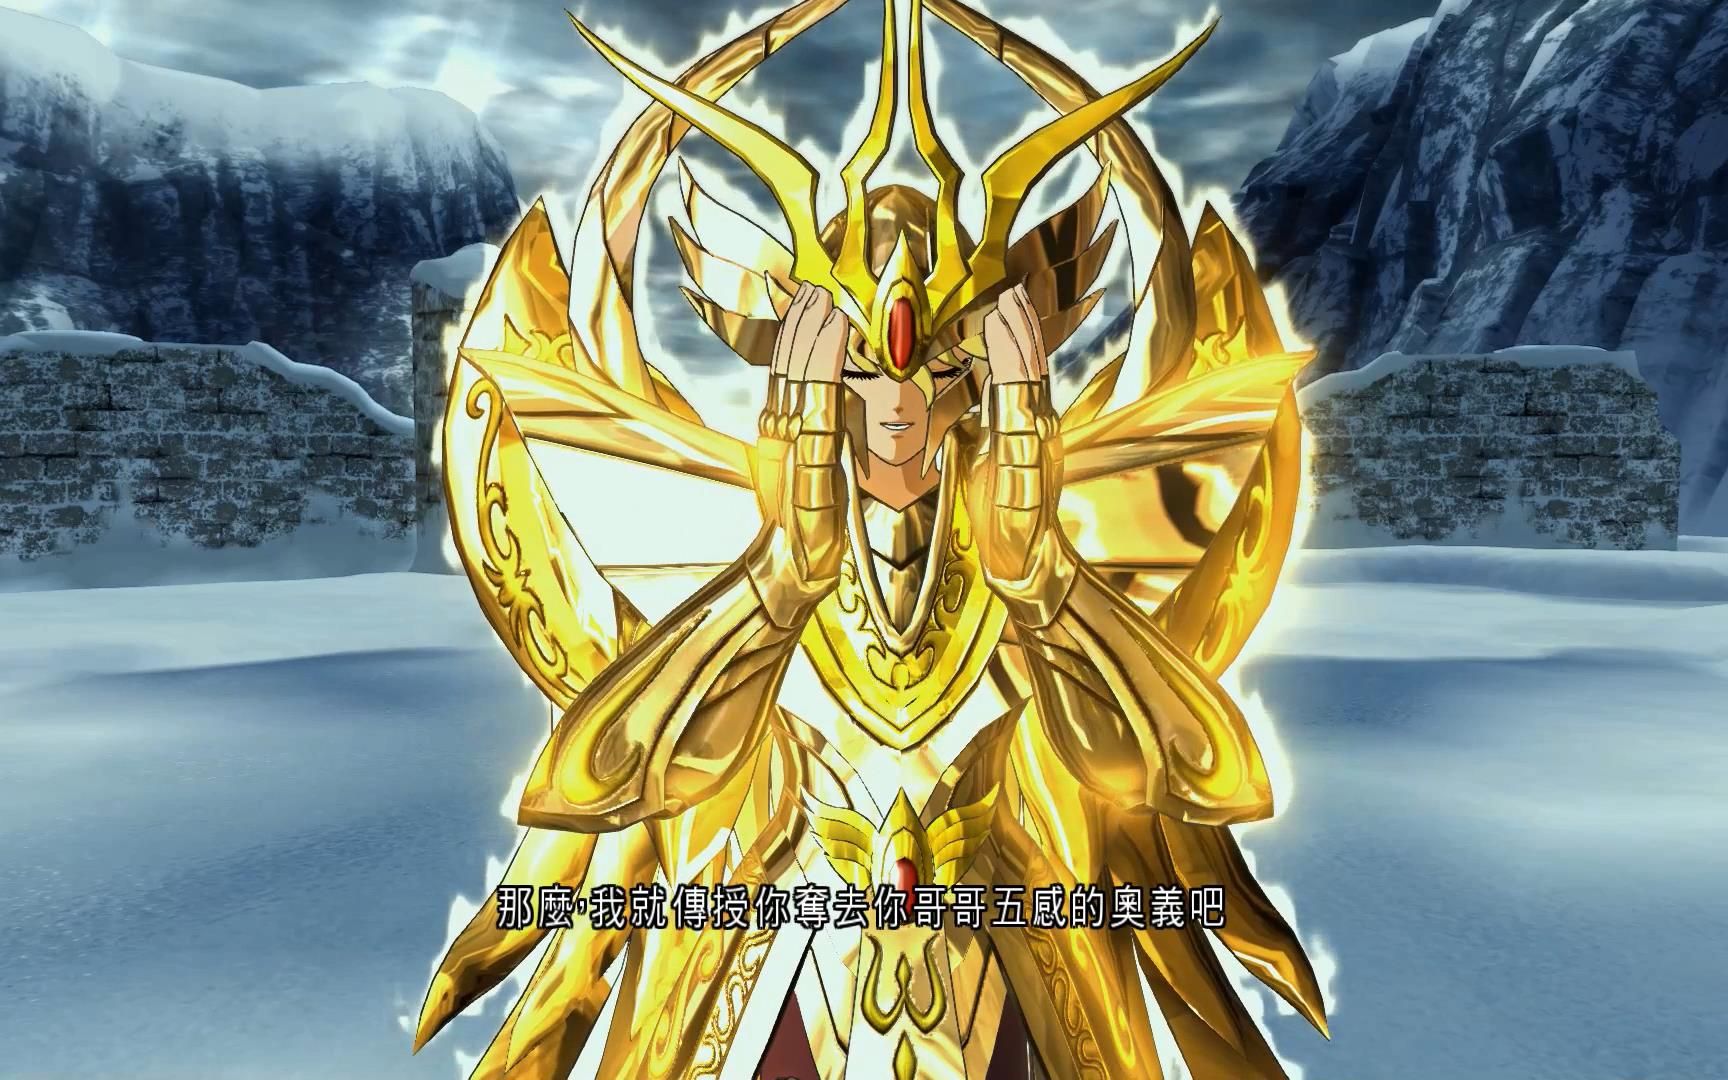 圣斗士星矢:黄金圣斗士沙加,可摧毁敌人的五感,优雅永不过时